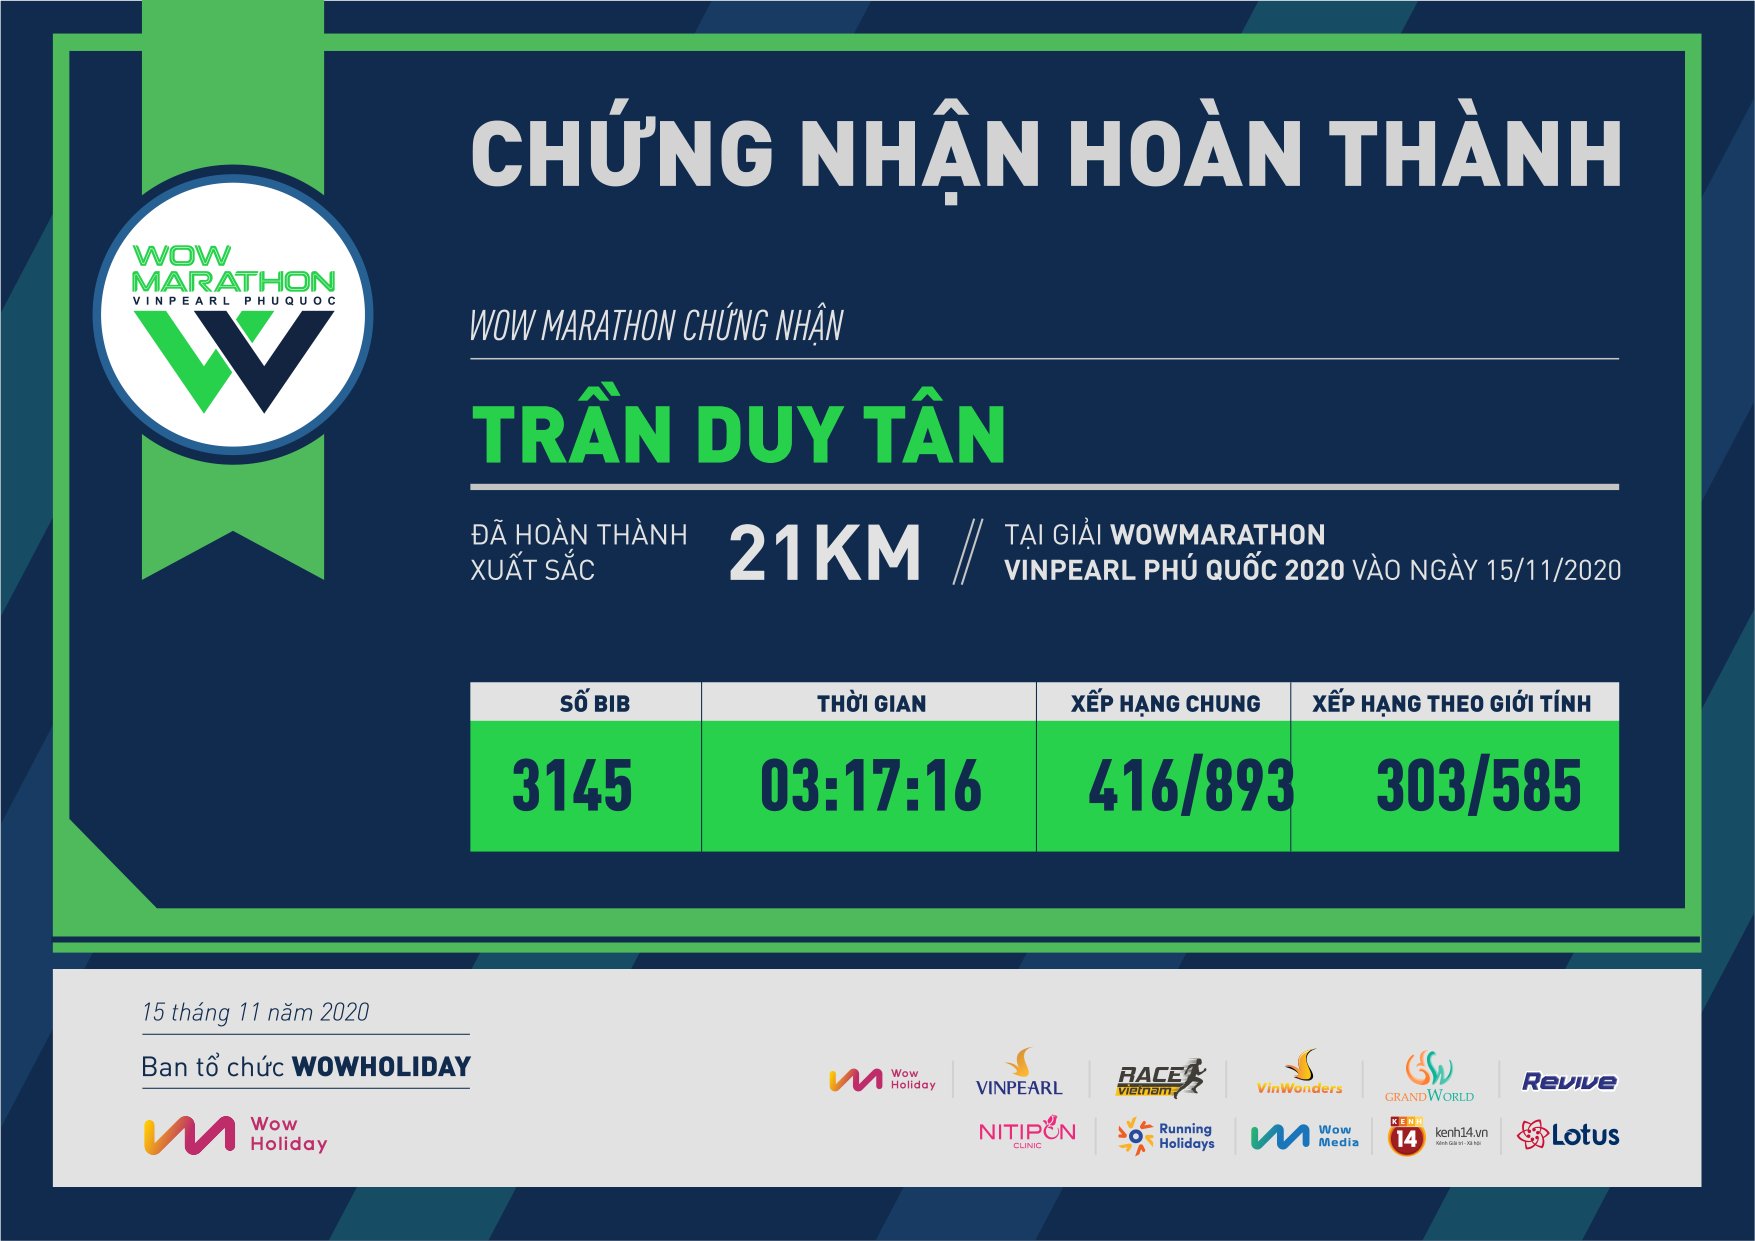 3145 - Trần Duy Tân